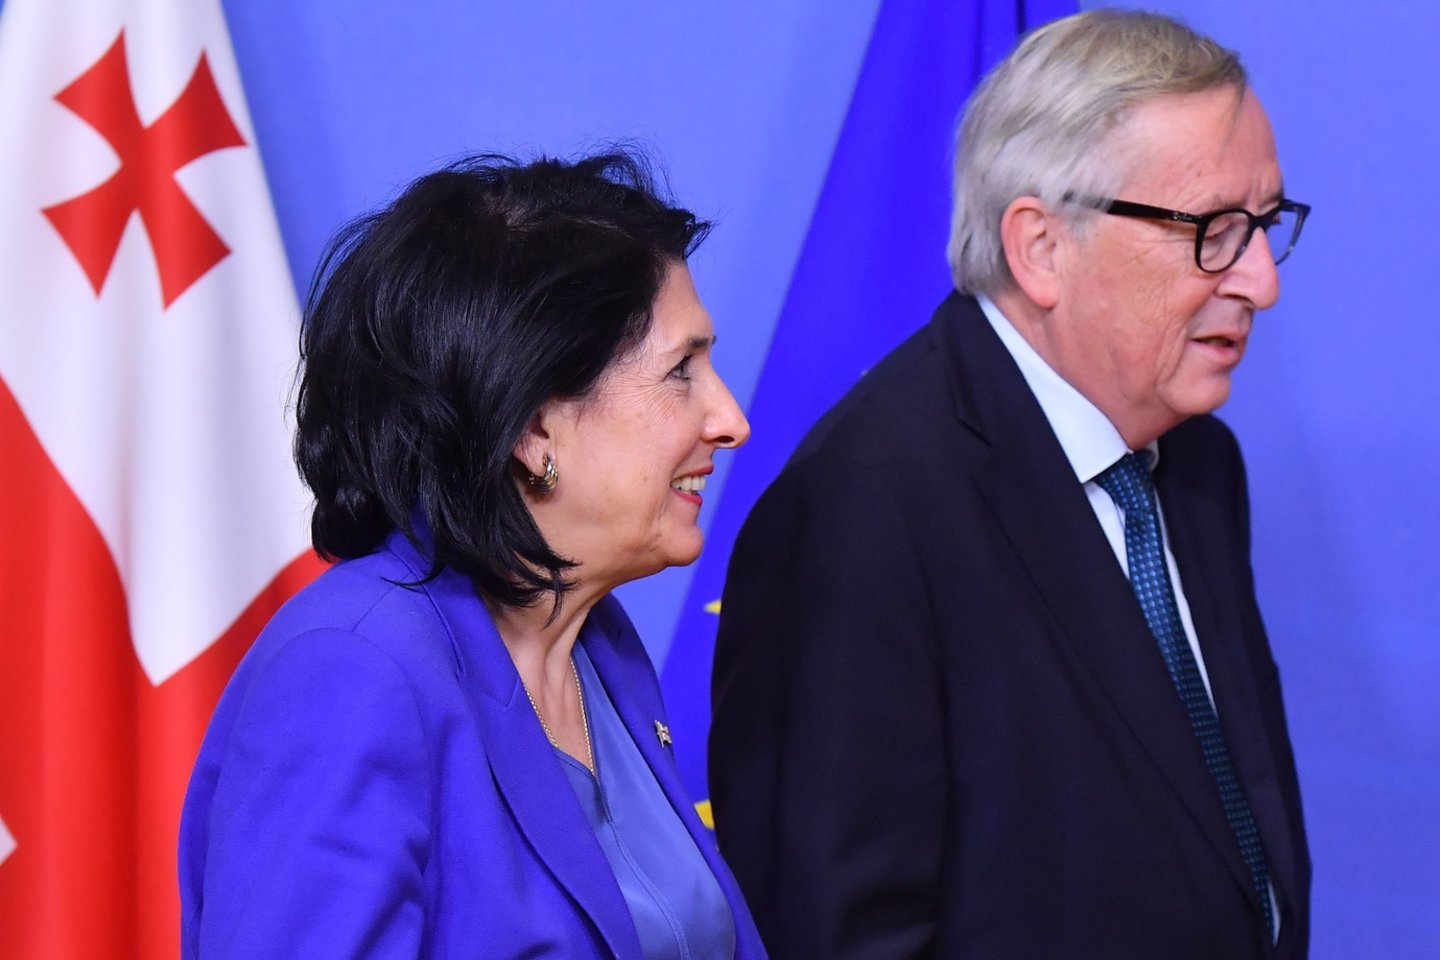  Gruzijos prezidentė Salomė Zurabišvili pranešė Briuselyje paskelbusi iniciatyvą jos šaliai įstoti į Europos struktūras be narystės Europos Sąjungoje.<br>AFP/Scanpix nuotr.